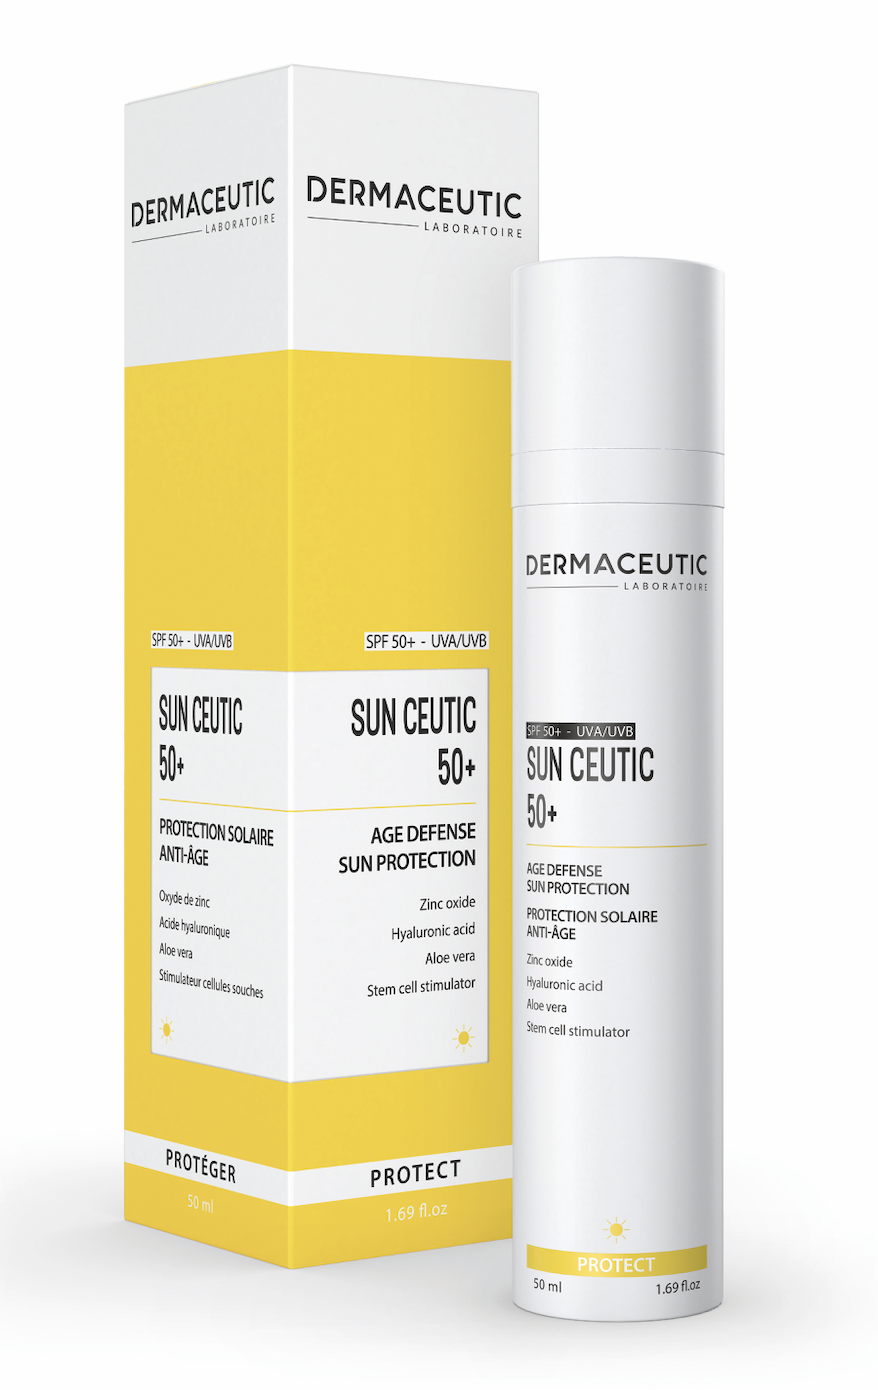 Sun Ceutic 50+ Dermaceutic